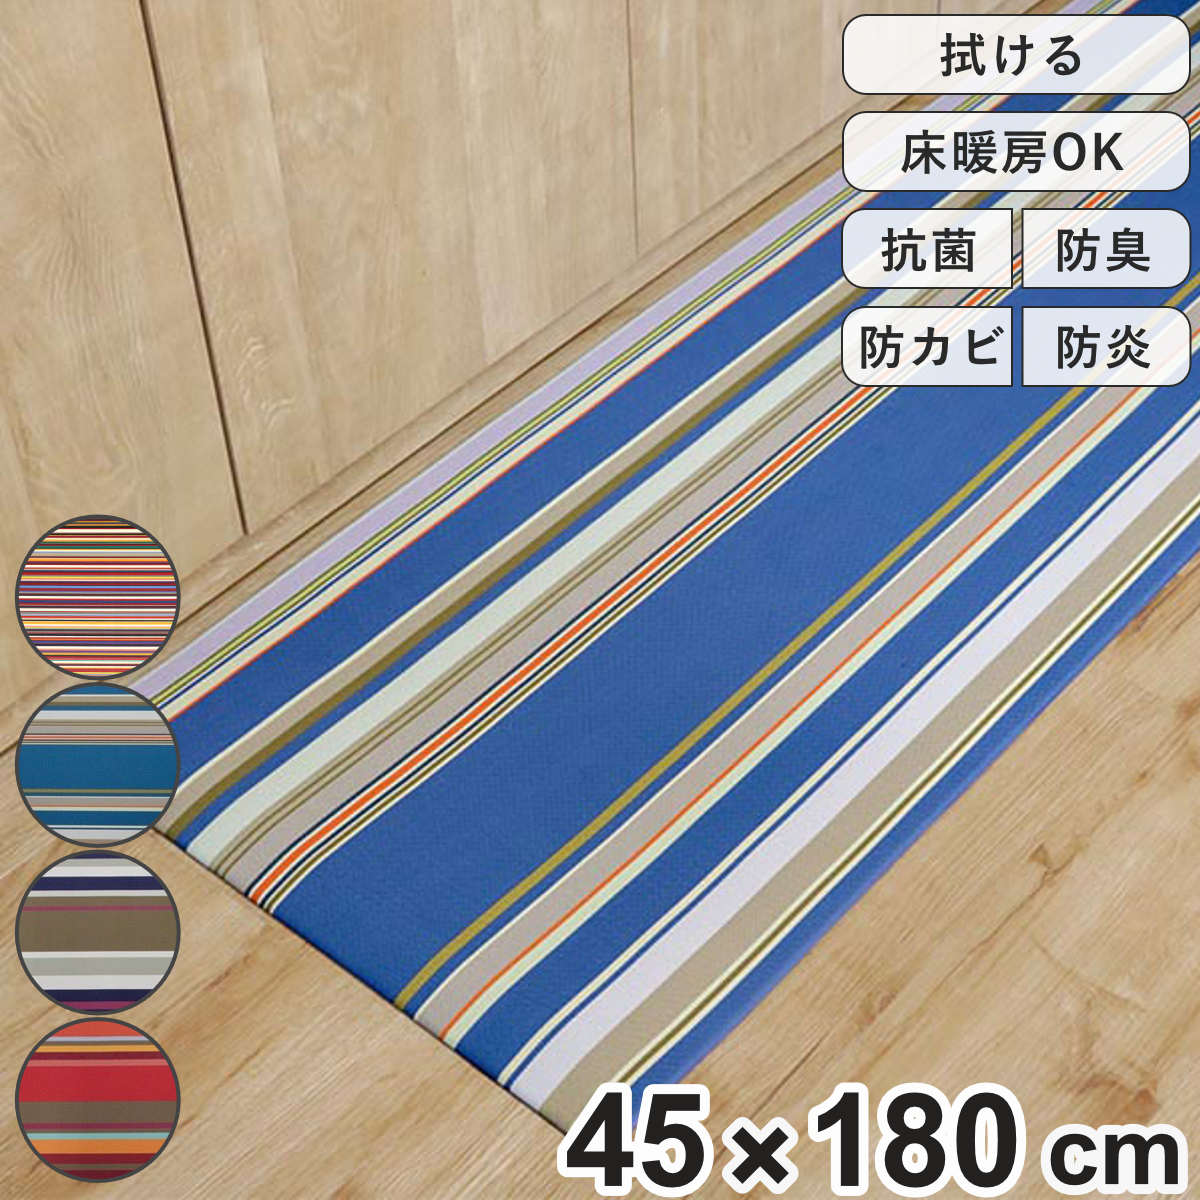 キッチンマット 45×180cm PVC 拭けるキッチンマット レ・トワール・デュ・ソレイユ